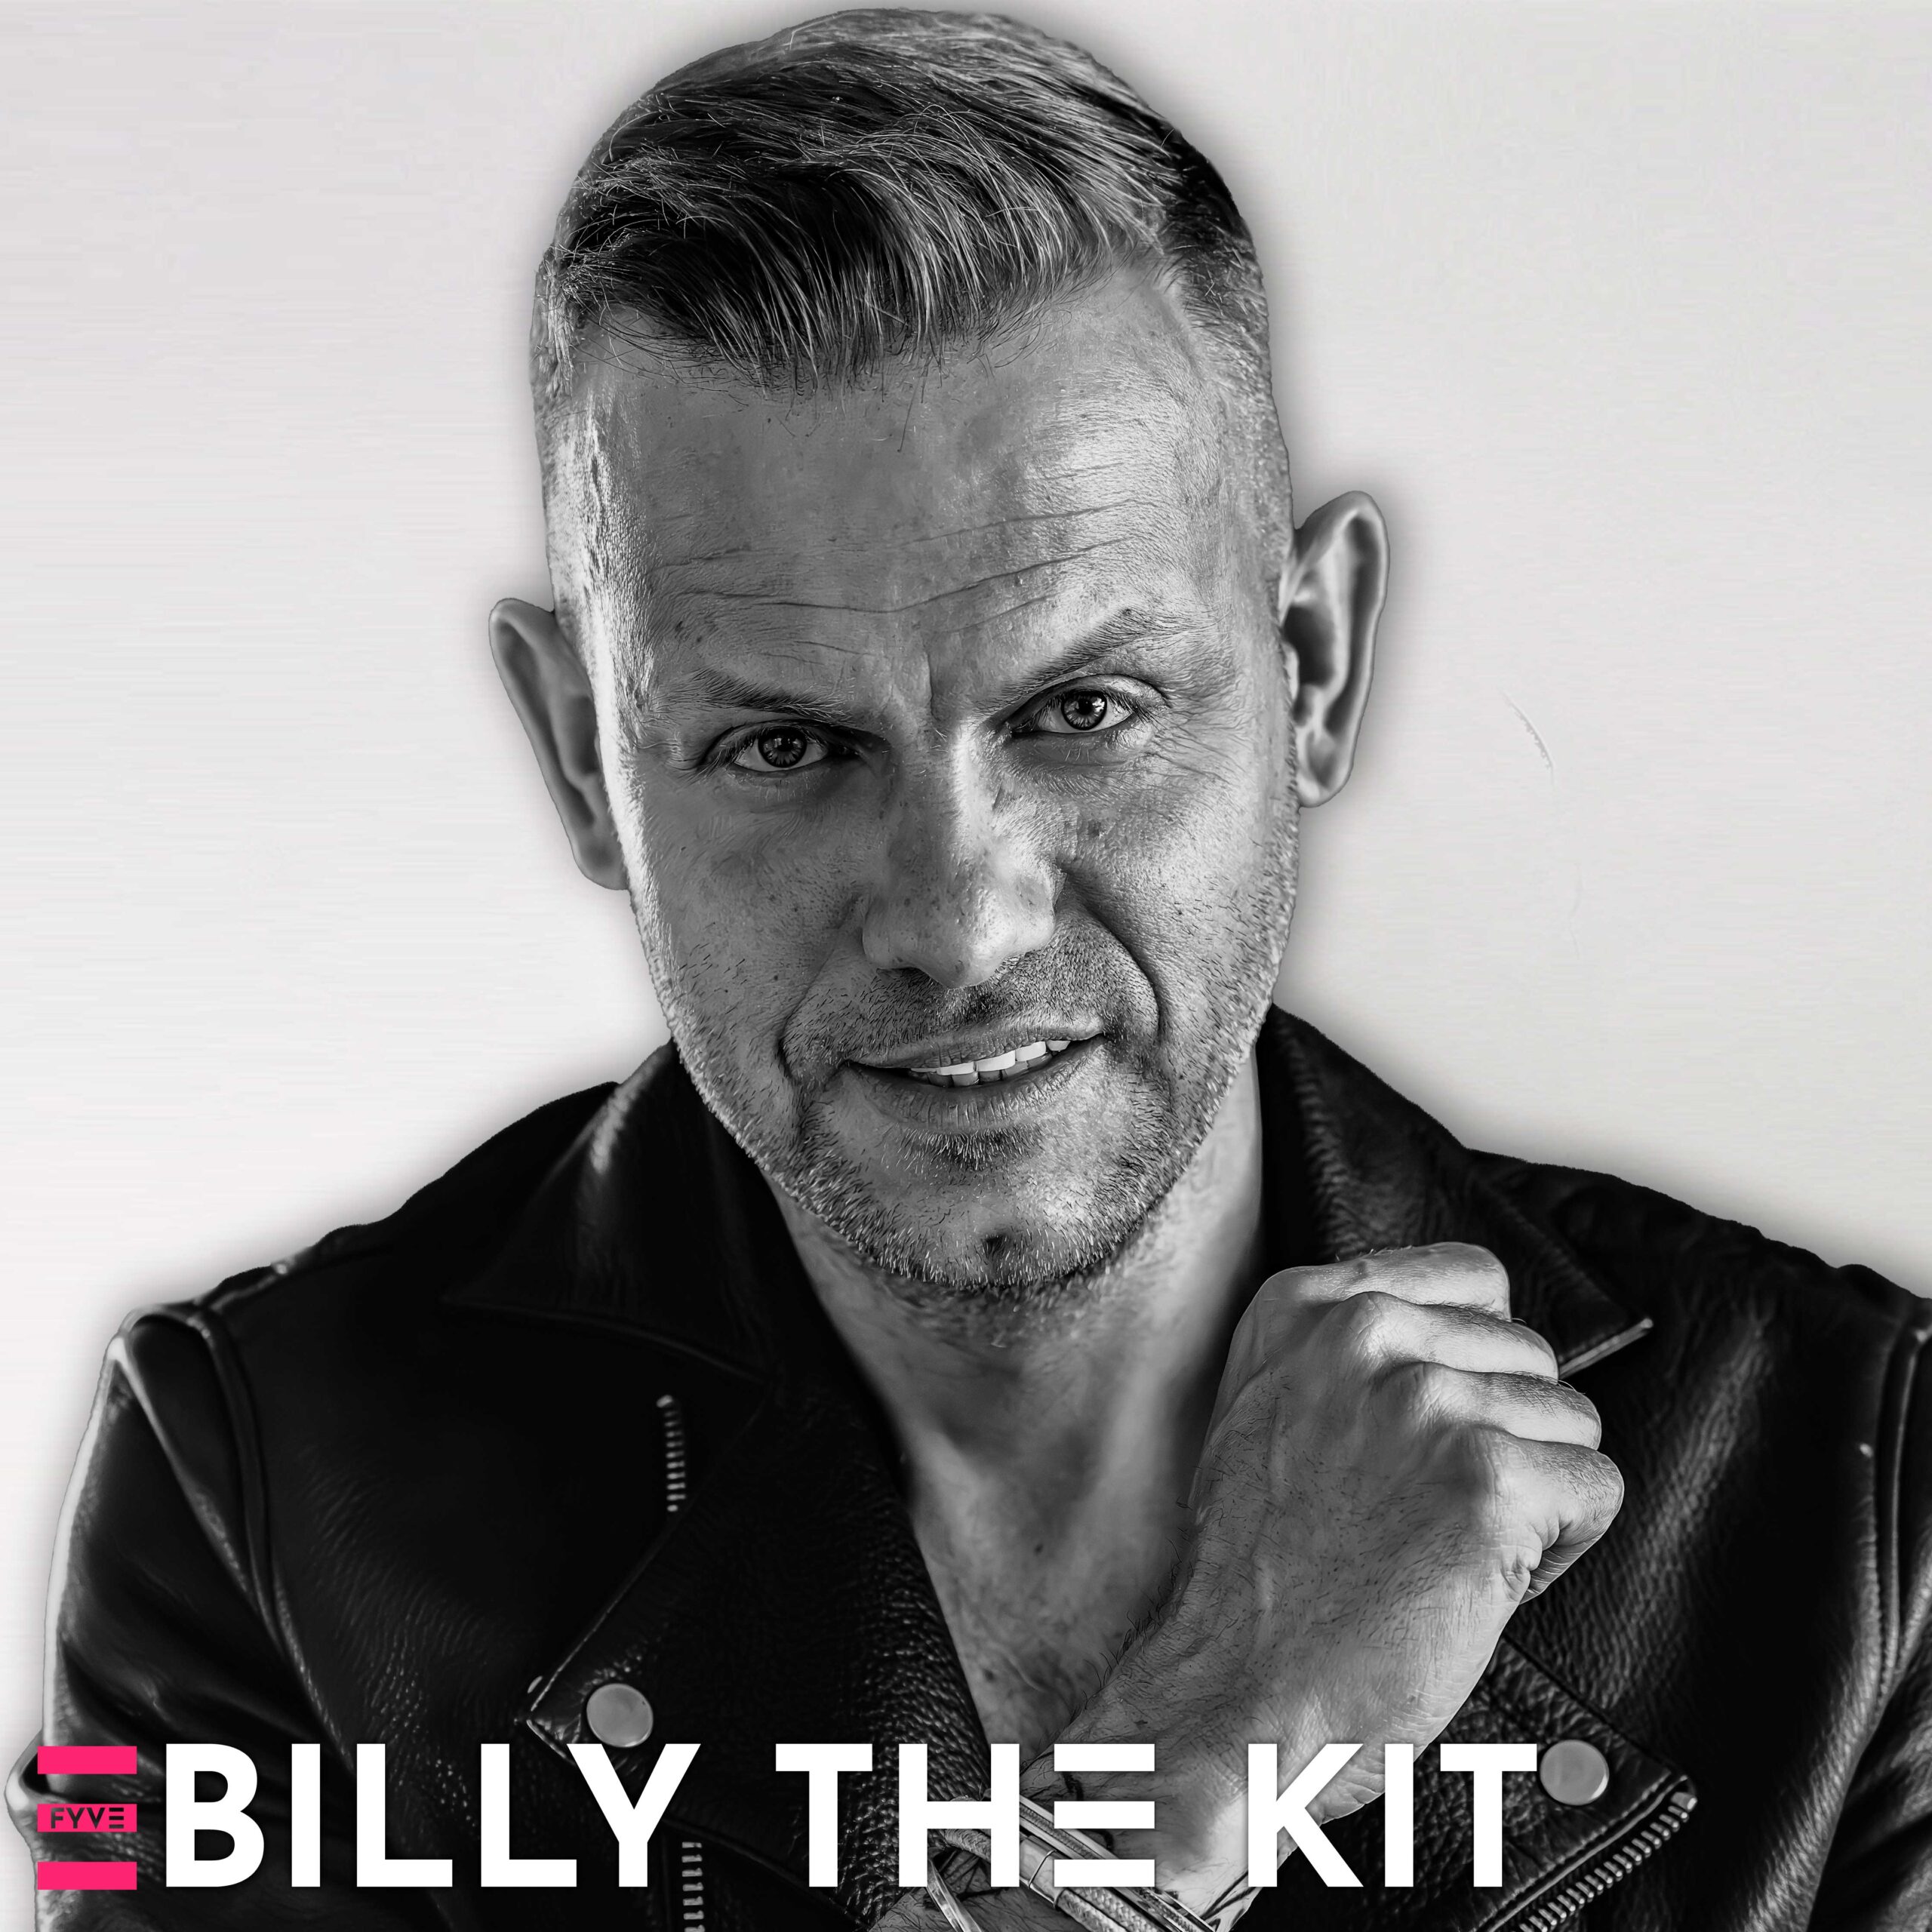 DJ Billy the Kit